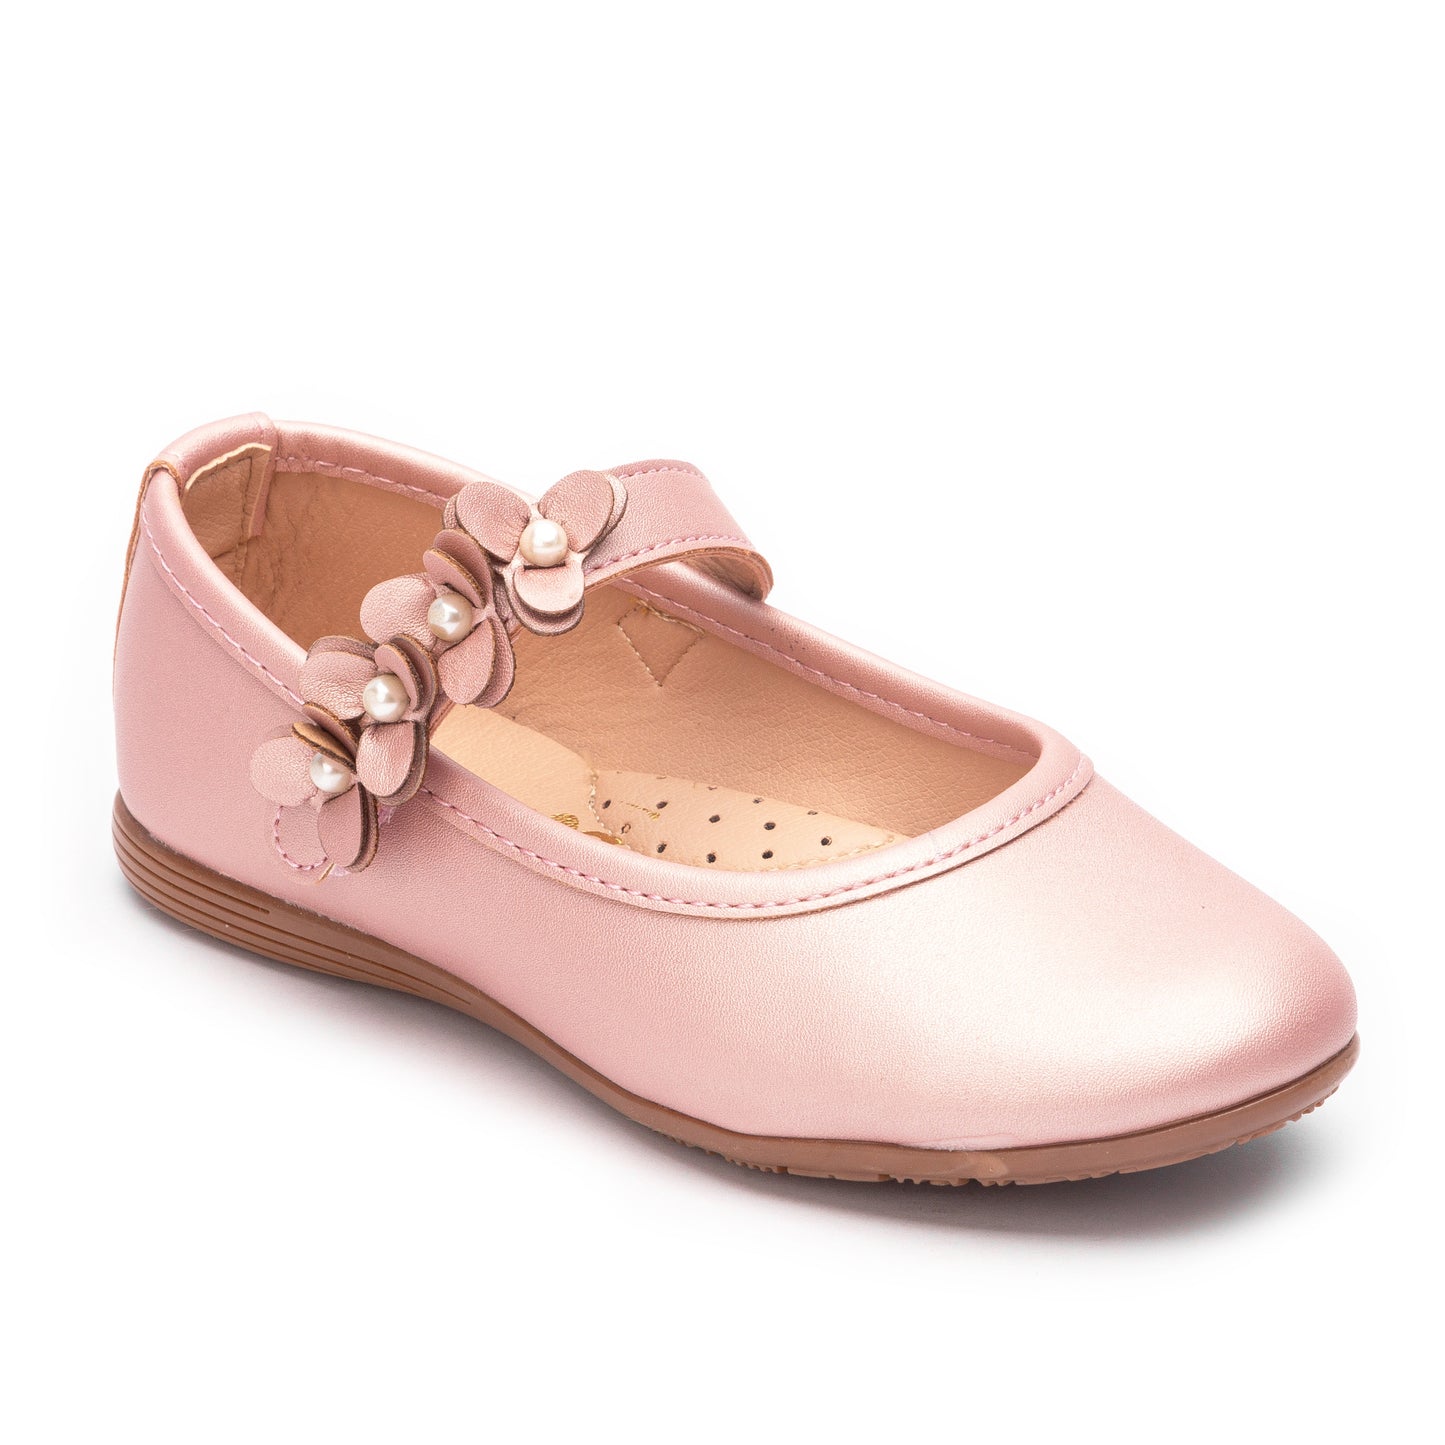 Zapato tipo Balerina color Champagne y Nacar para niña Jakuna 23894